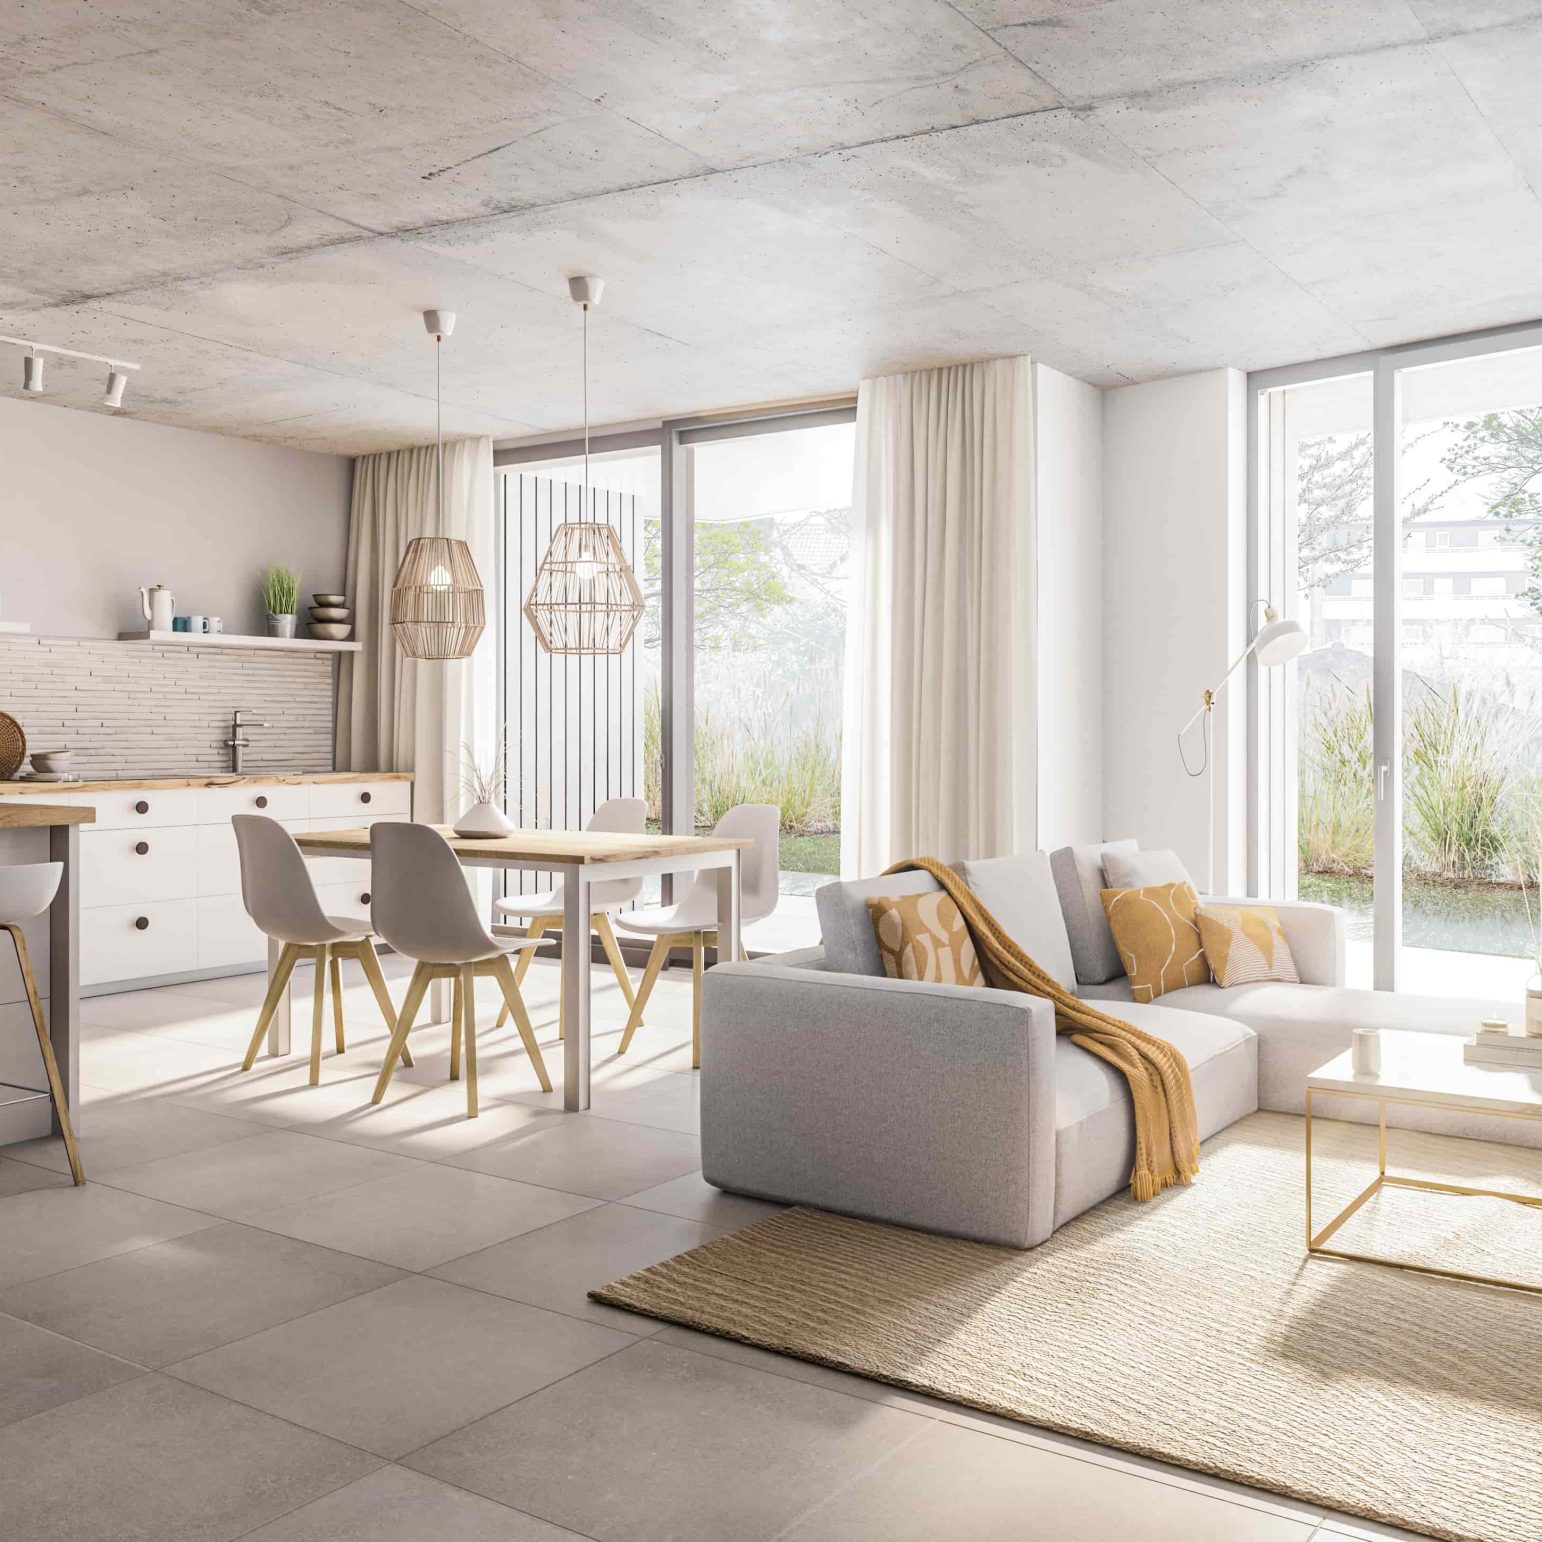 Einzimmerwohnung in Rosenheim mit minimalistischer Innenausstattung